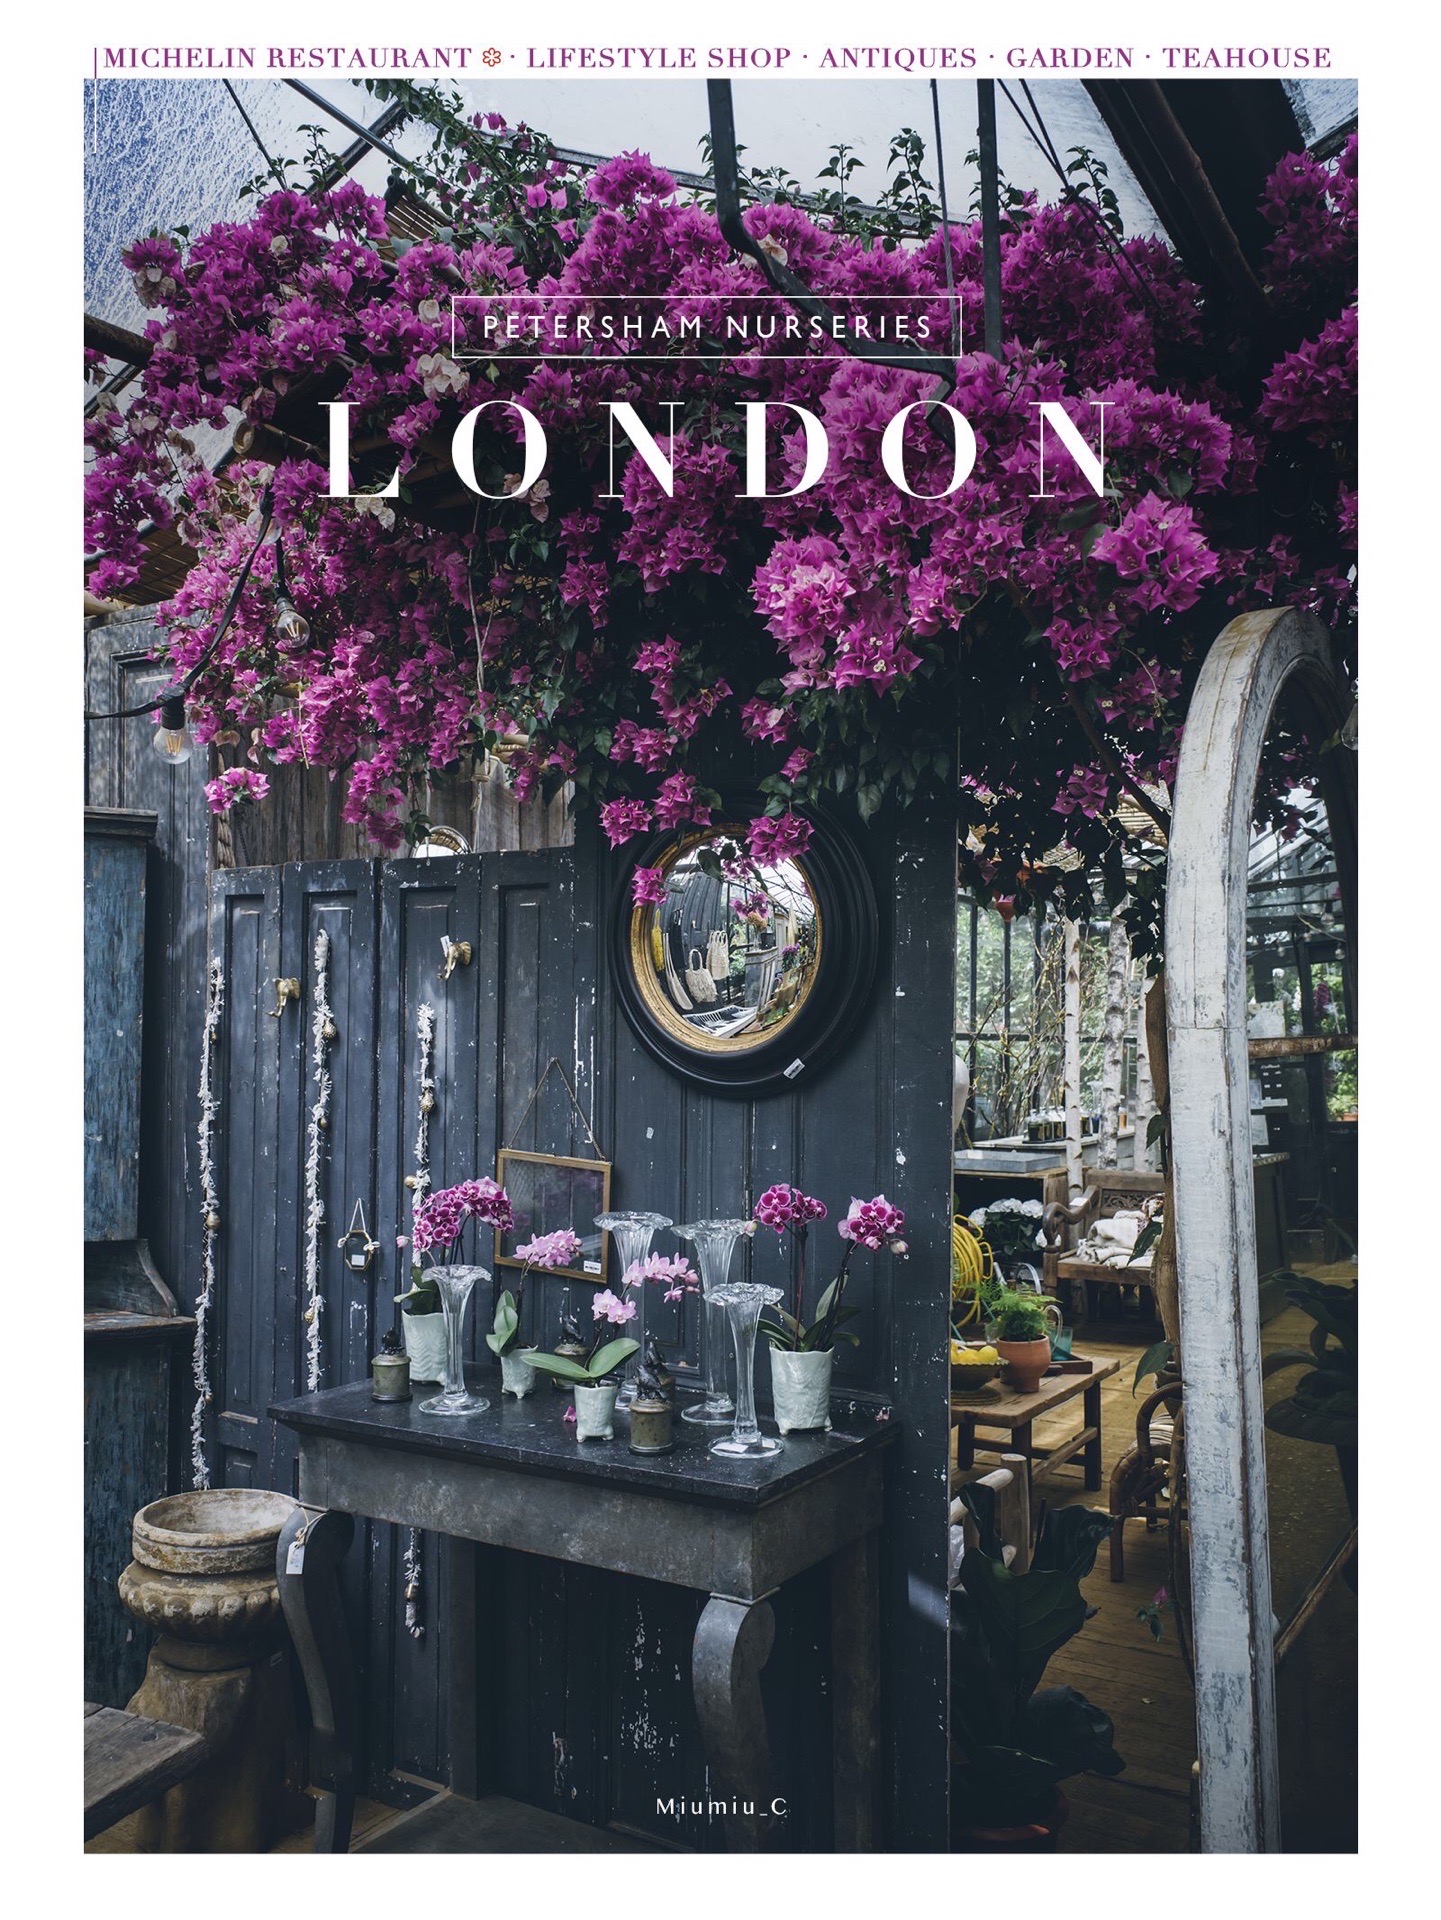 🇬🇧  伦敦 市郊|可预定园艺课的宝藏米其林餐厅·咖啡·茶室·古董·花园  如同宝藏一般存在的🌿Pe